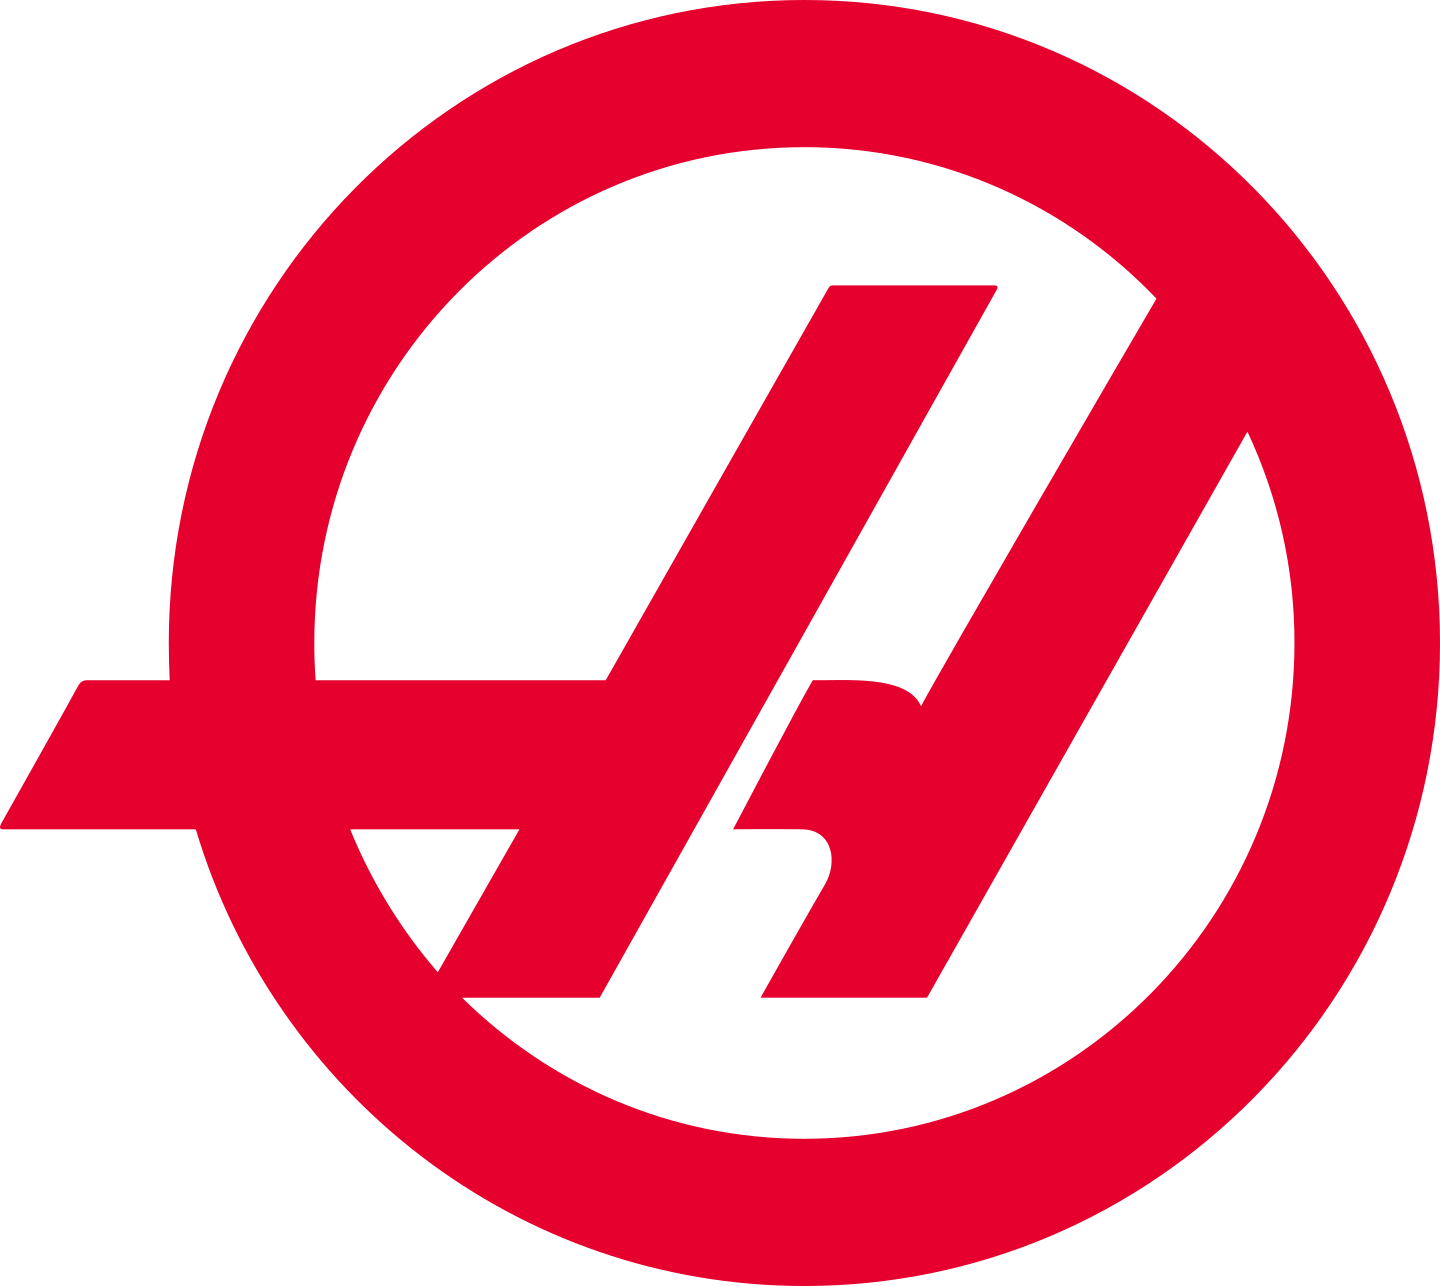 haas f1 team logo 3 - Haas F1 Team Logo